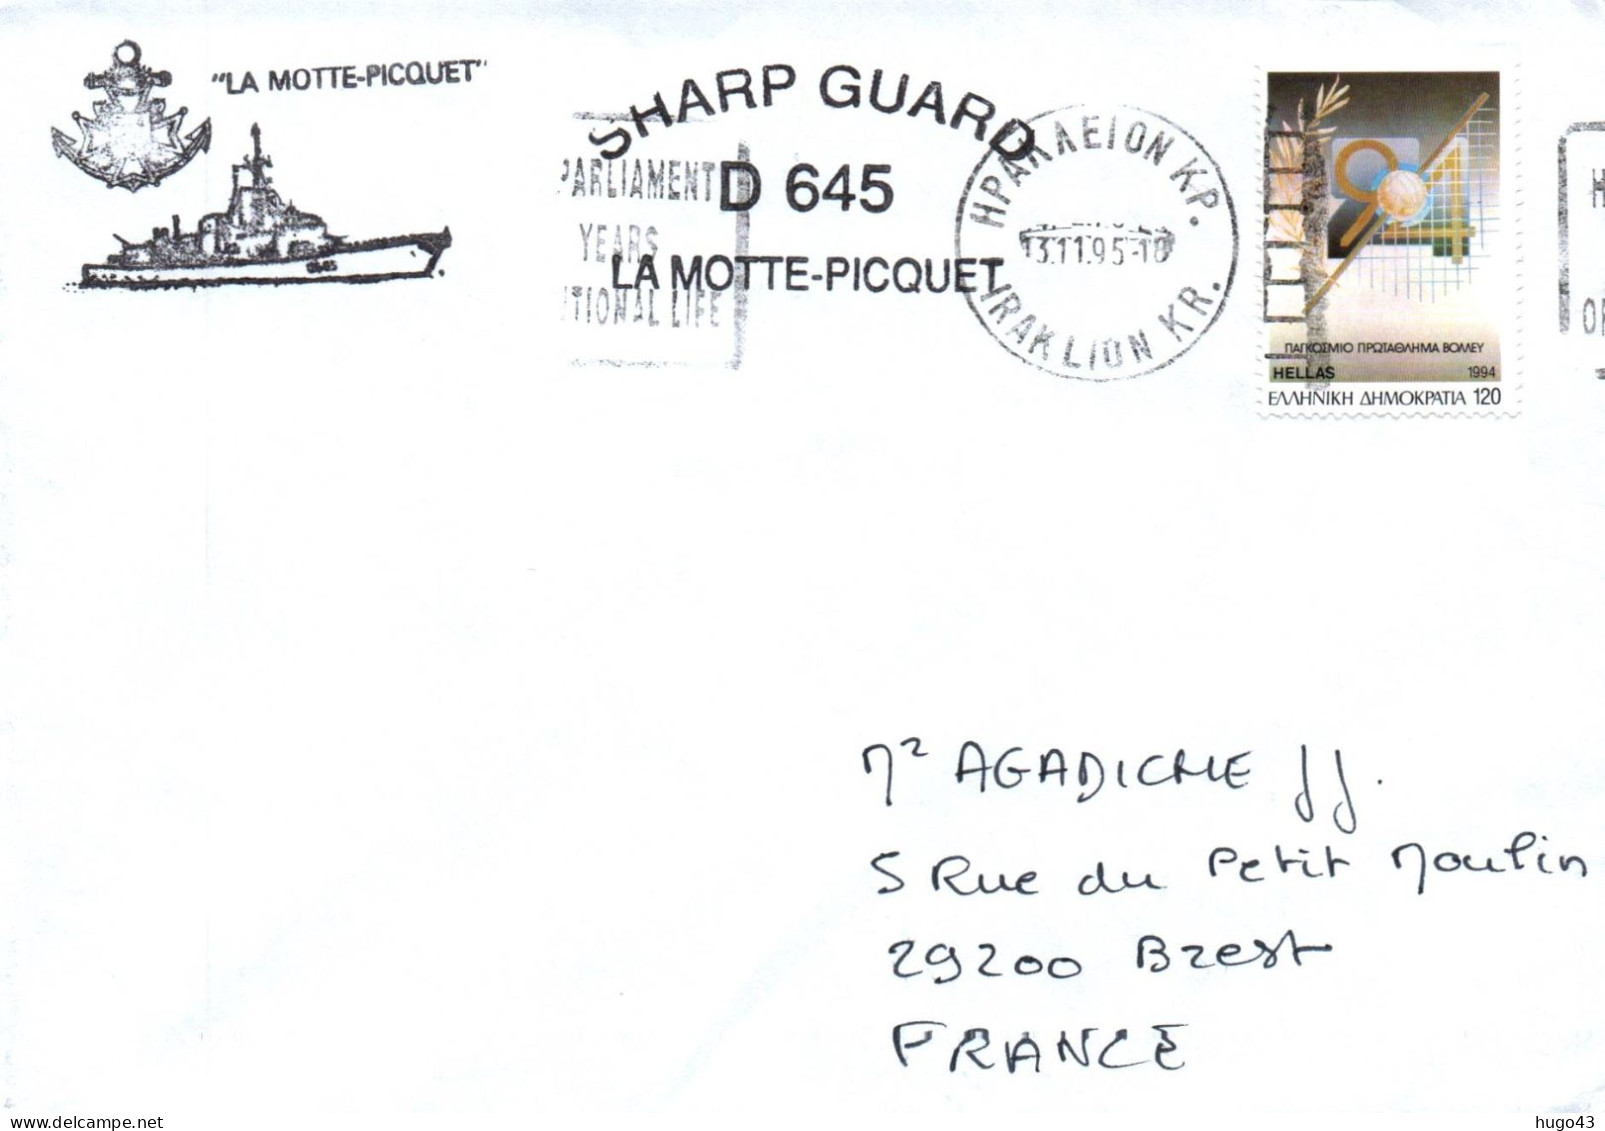 ENVELOPPE AVEC CACHET FREGATE FASM LA MOTTE PICQUET - SHARP GUARD D645 - ESCALE EN GRECE LE 13/11/1995 - Seepost